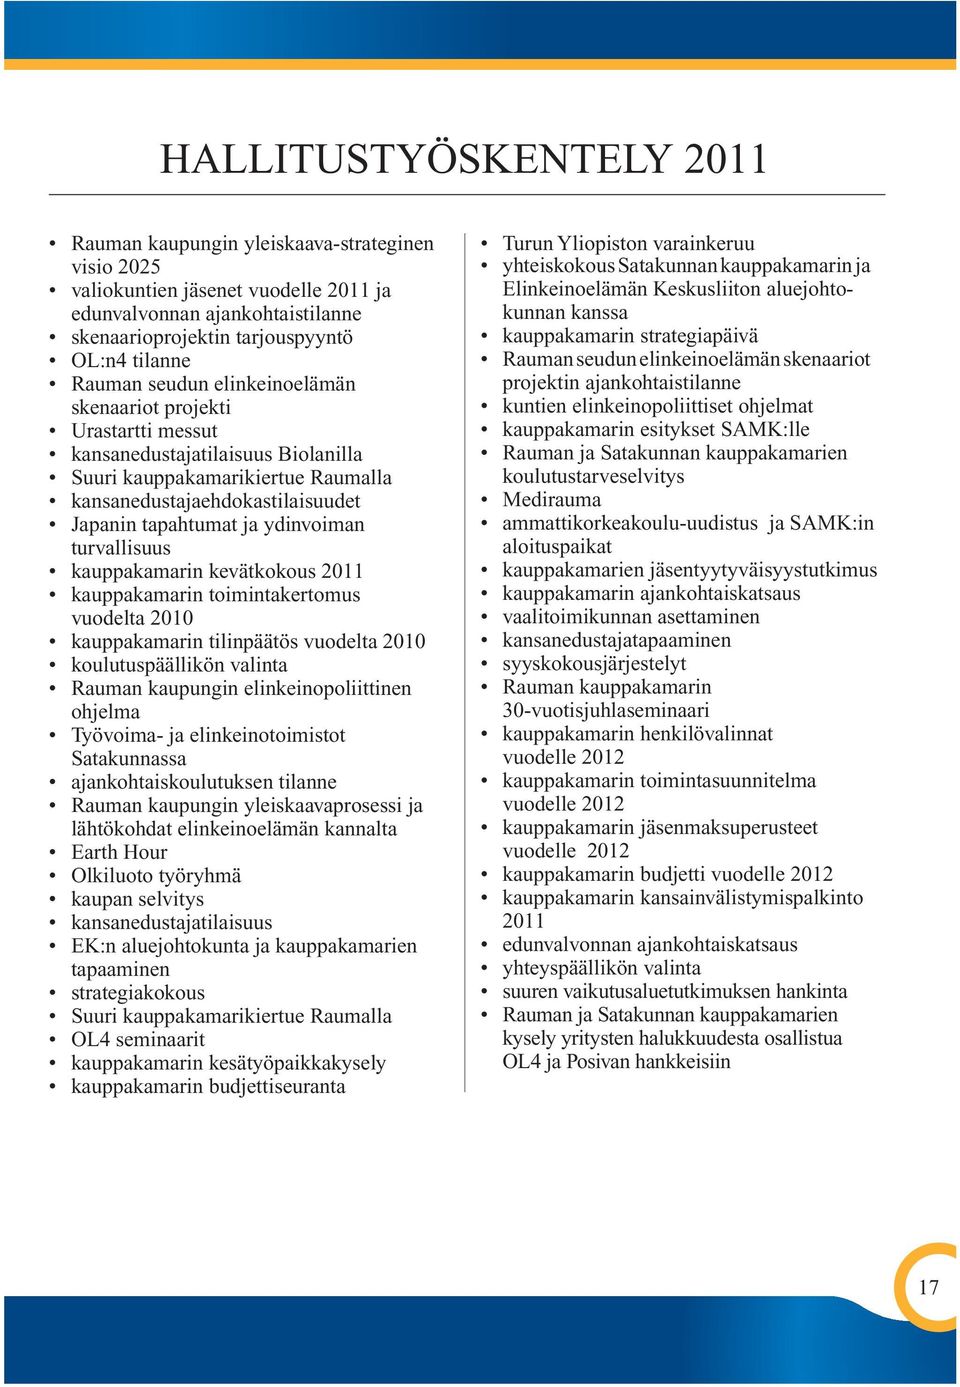 ydinvoiman turvallisuus kauppakamarin kevätkokous 2011 kauppakamarin toimintakertomus vuodelta 2010 kauppakamarin tilinpäätös vuodelta 2010 koulutuspäällikön valinta Rauman kaupungin